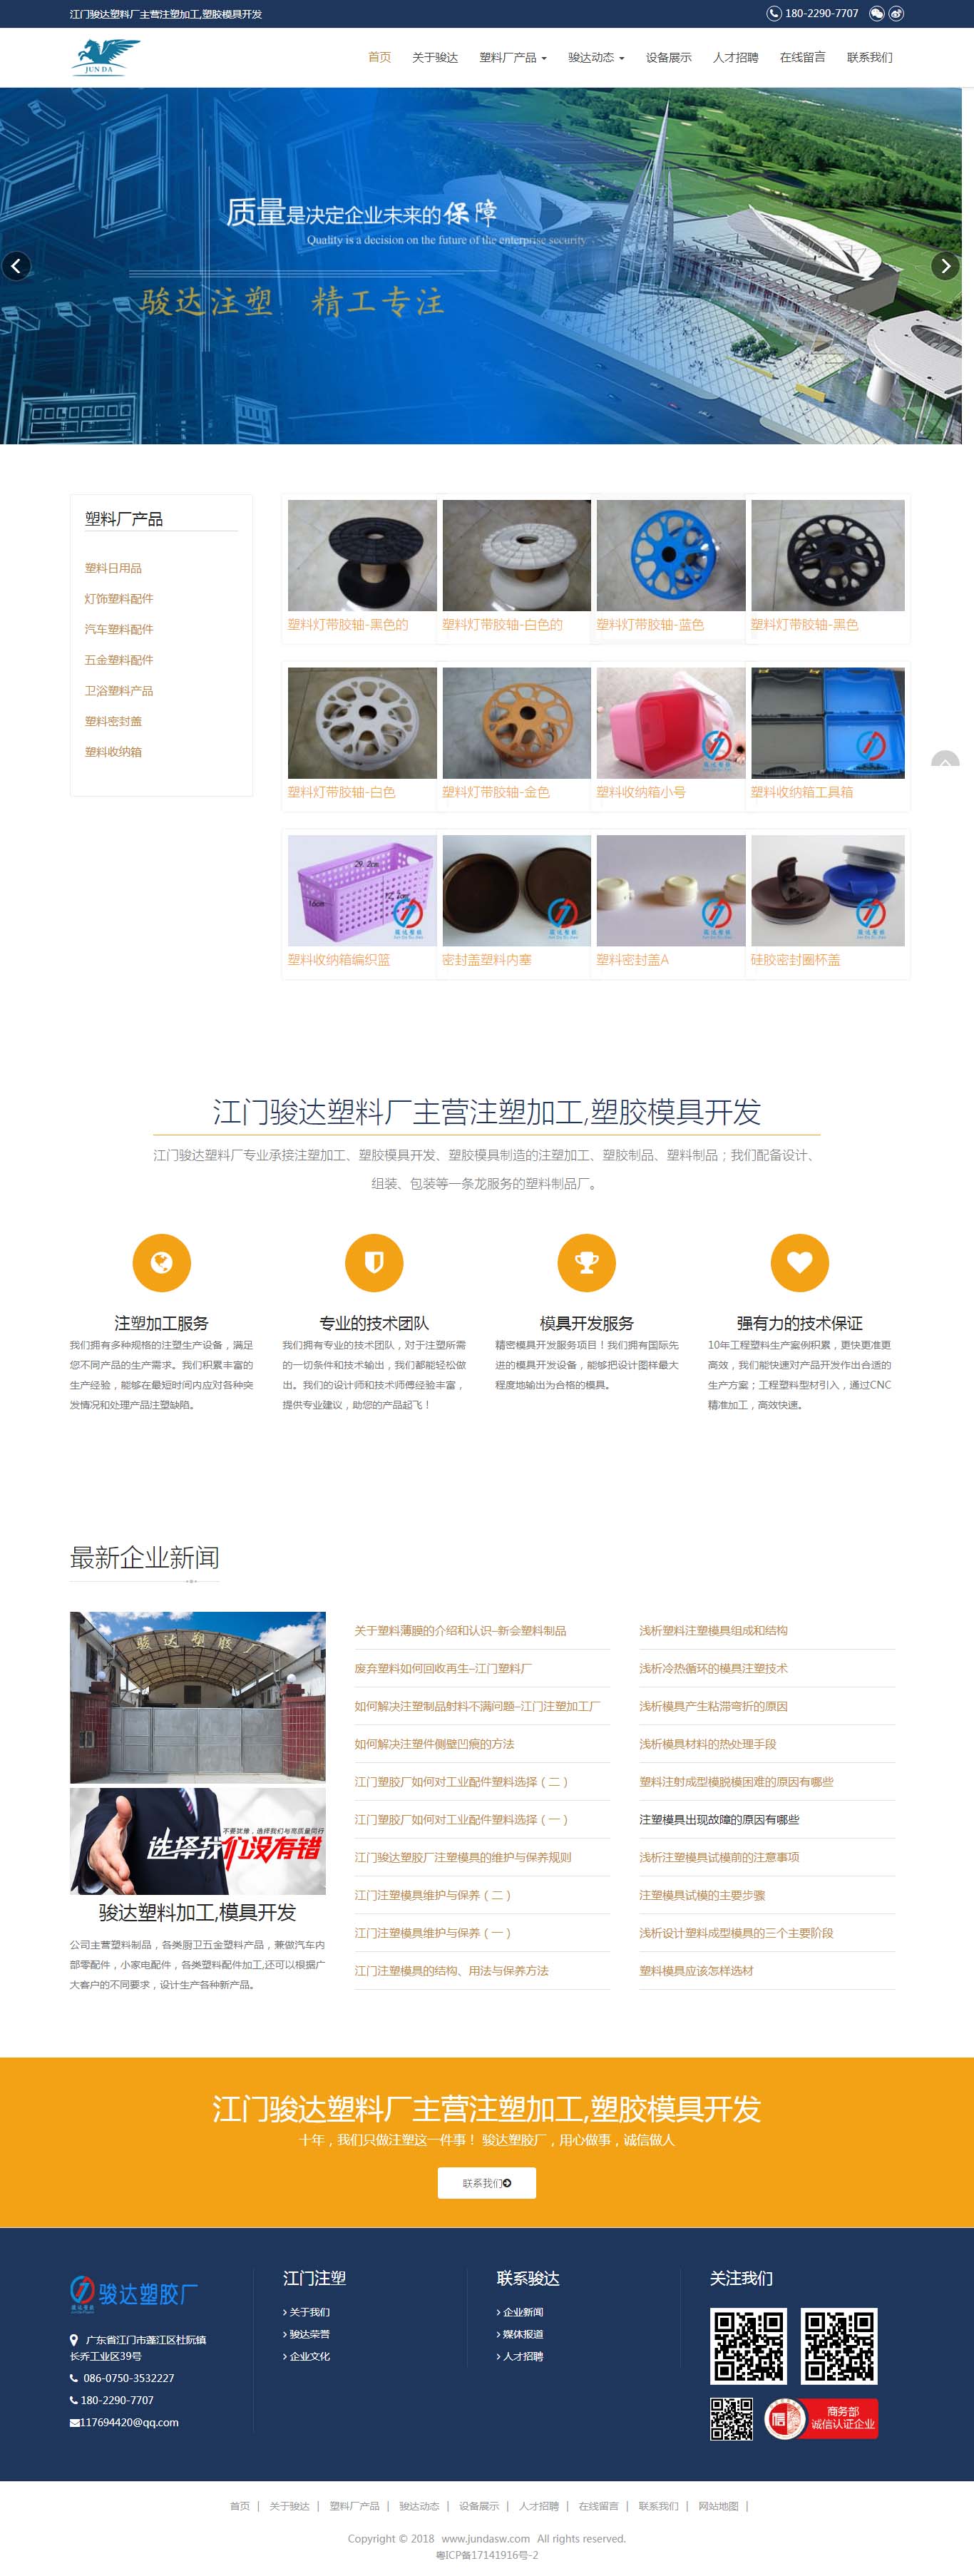 江门塑料生产类厂家响应式网站建设案例行业网站建设案例